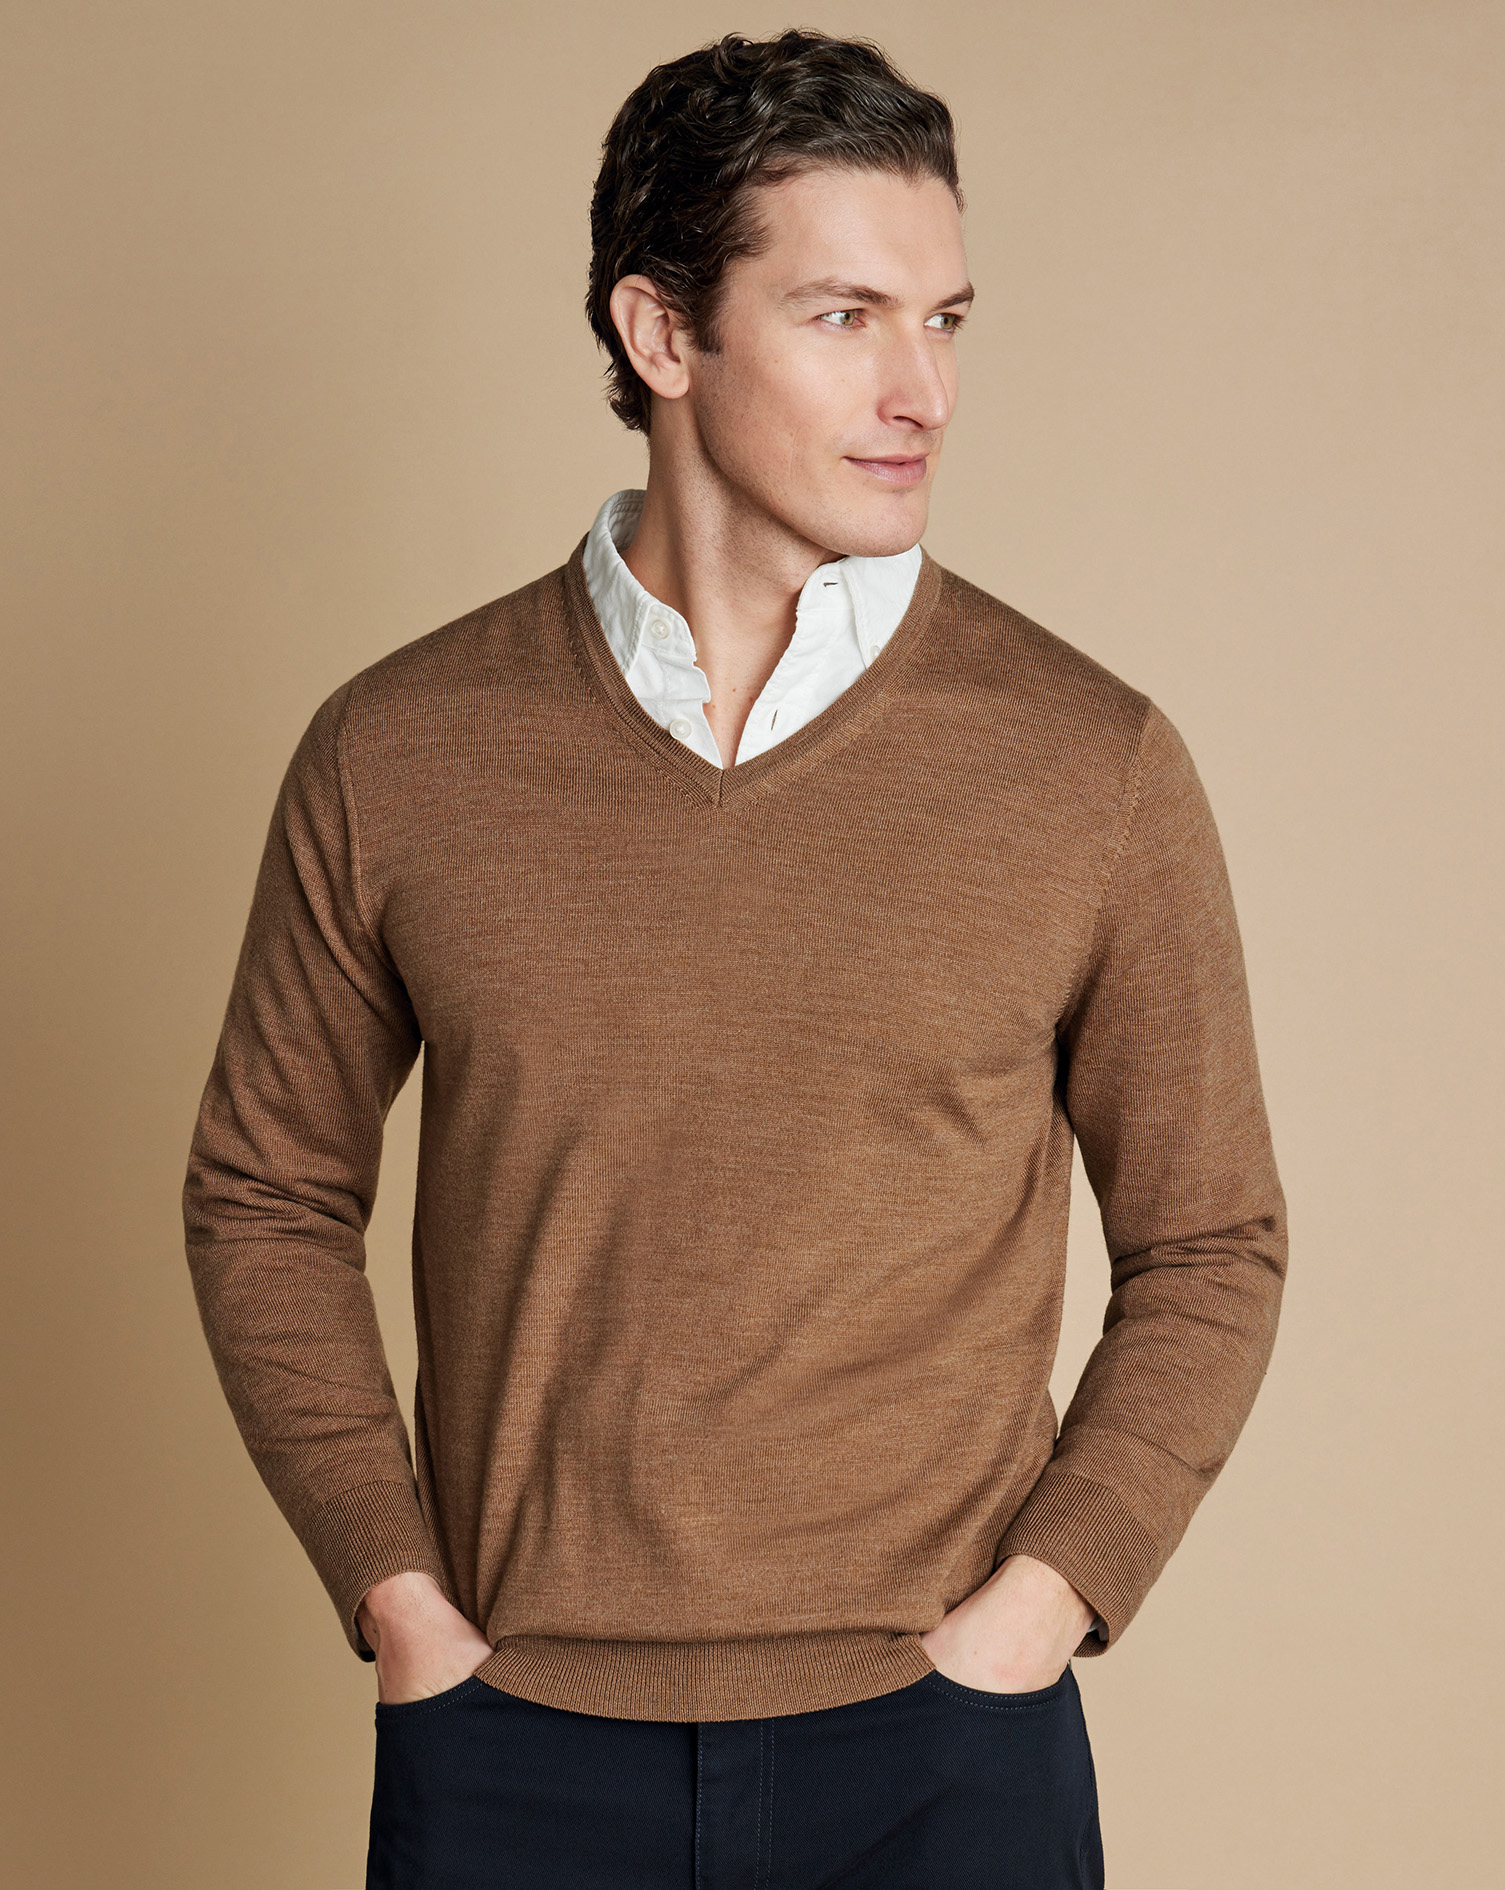 Men's Charles Tyrwhitt Merino V-Neck Sweater - Sand Brown Neutral Size XXL Wool
